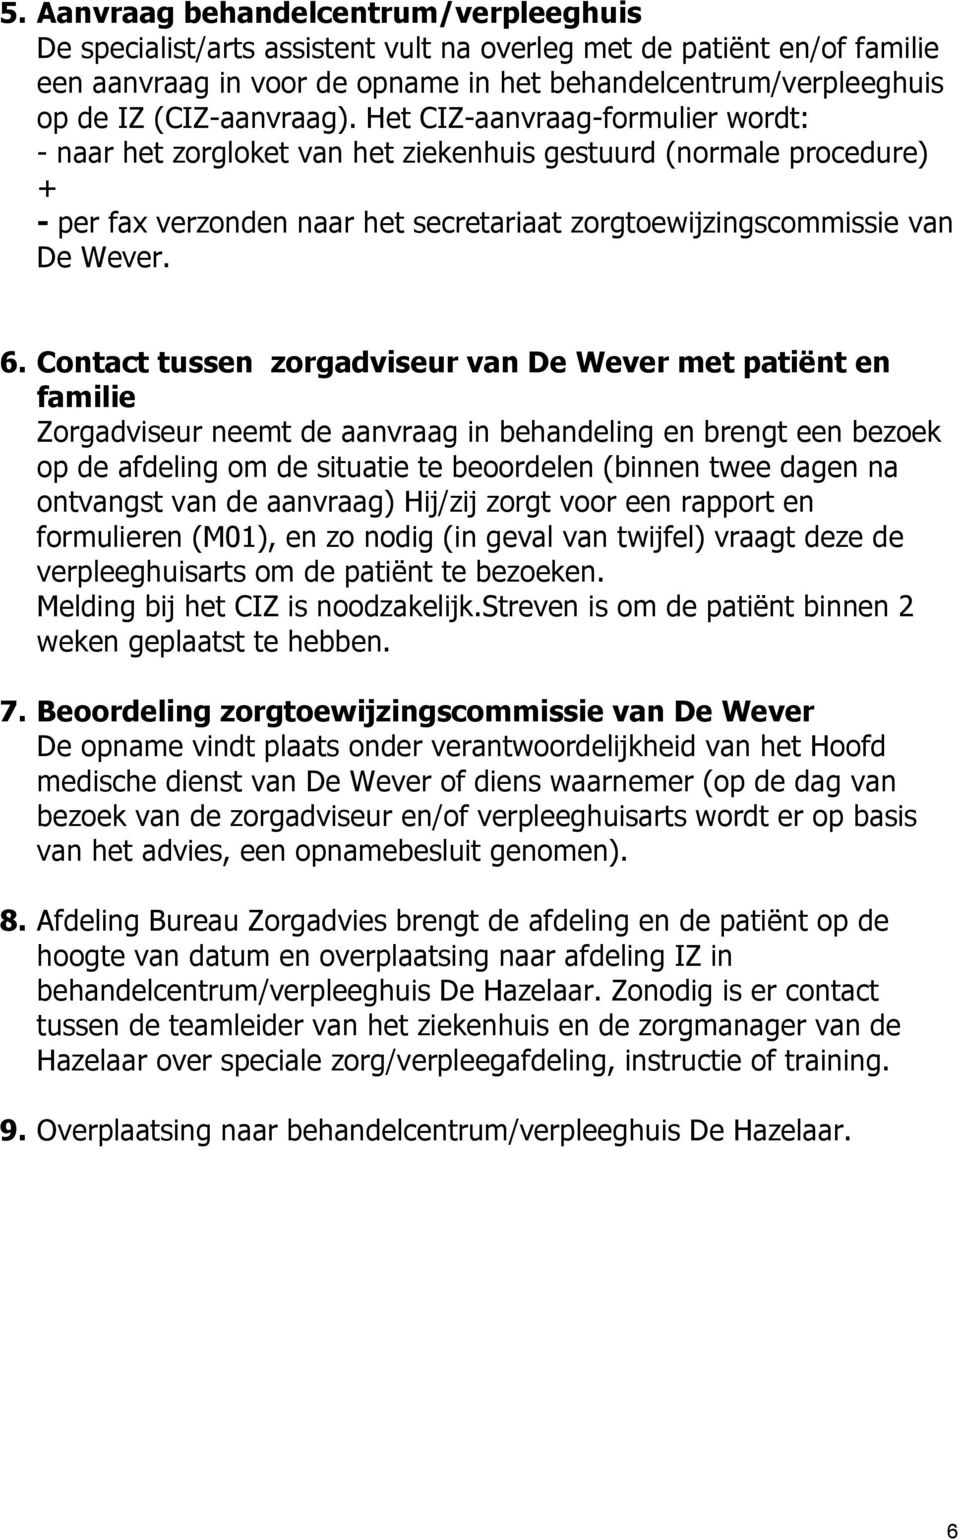 Het CIZ-aanvraag-formulier wordt: - naar het zorgloket van het ziekenhuis gestuurd (normale procedure) + - per fax verzonden naar het secretariaat zorgtoewijzingscommissie van De Wever. 6.